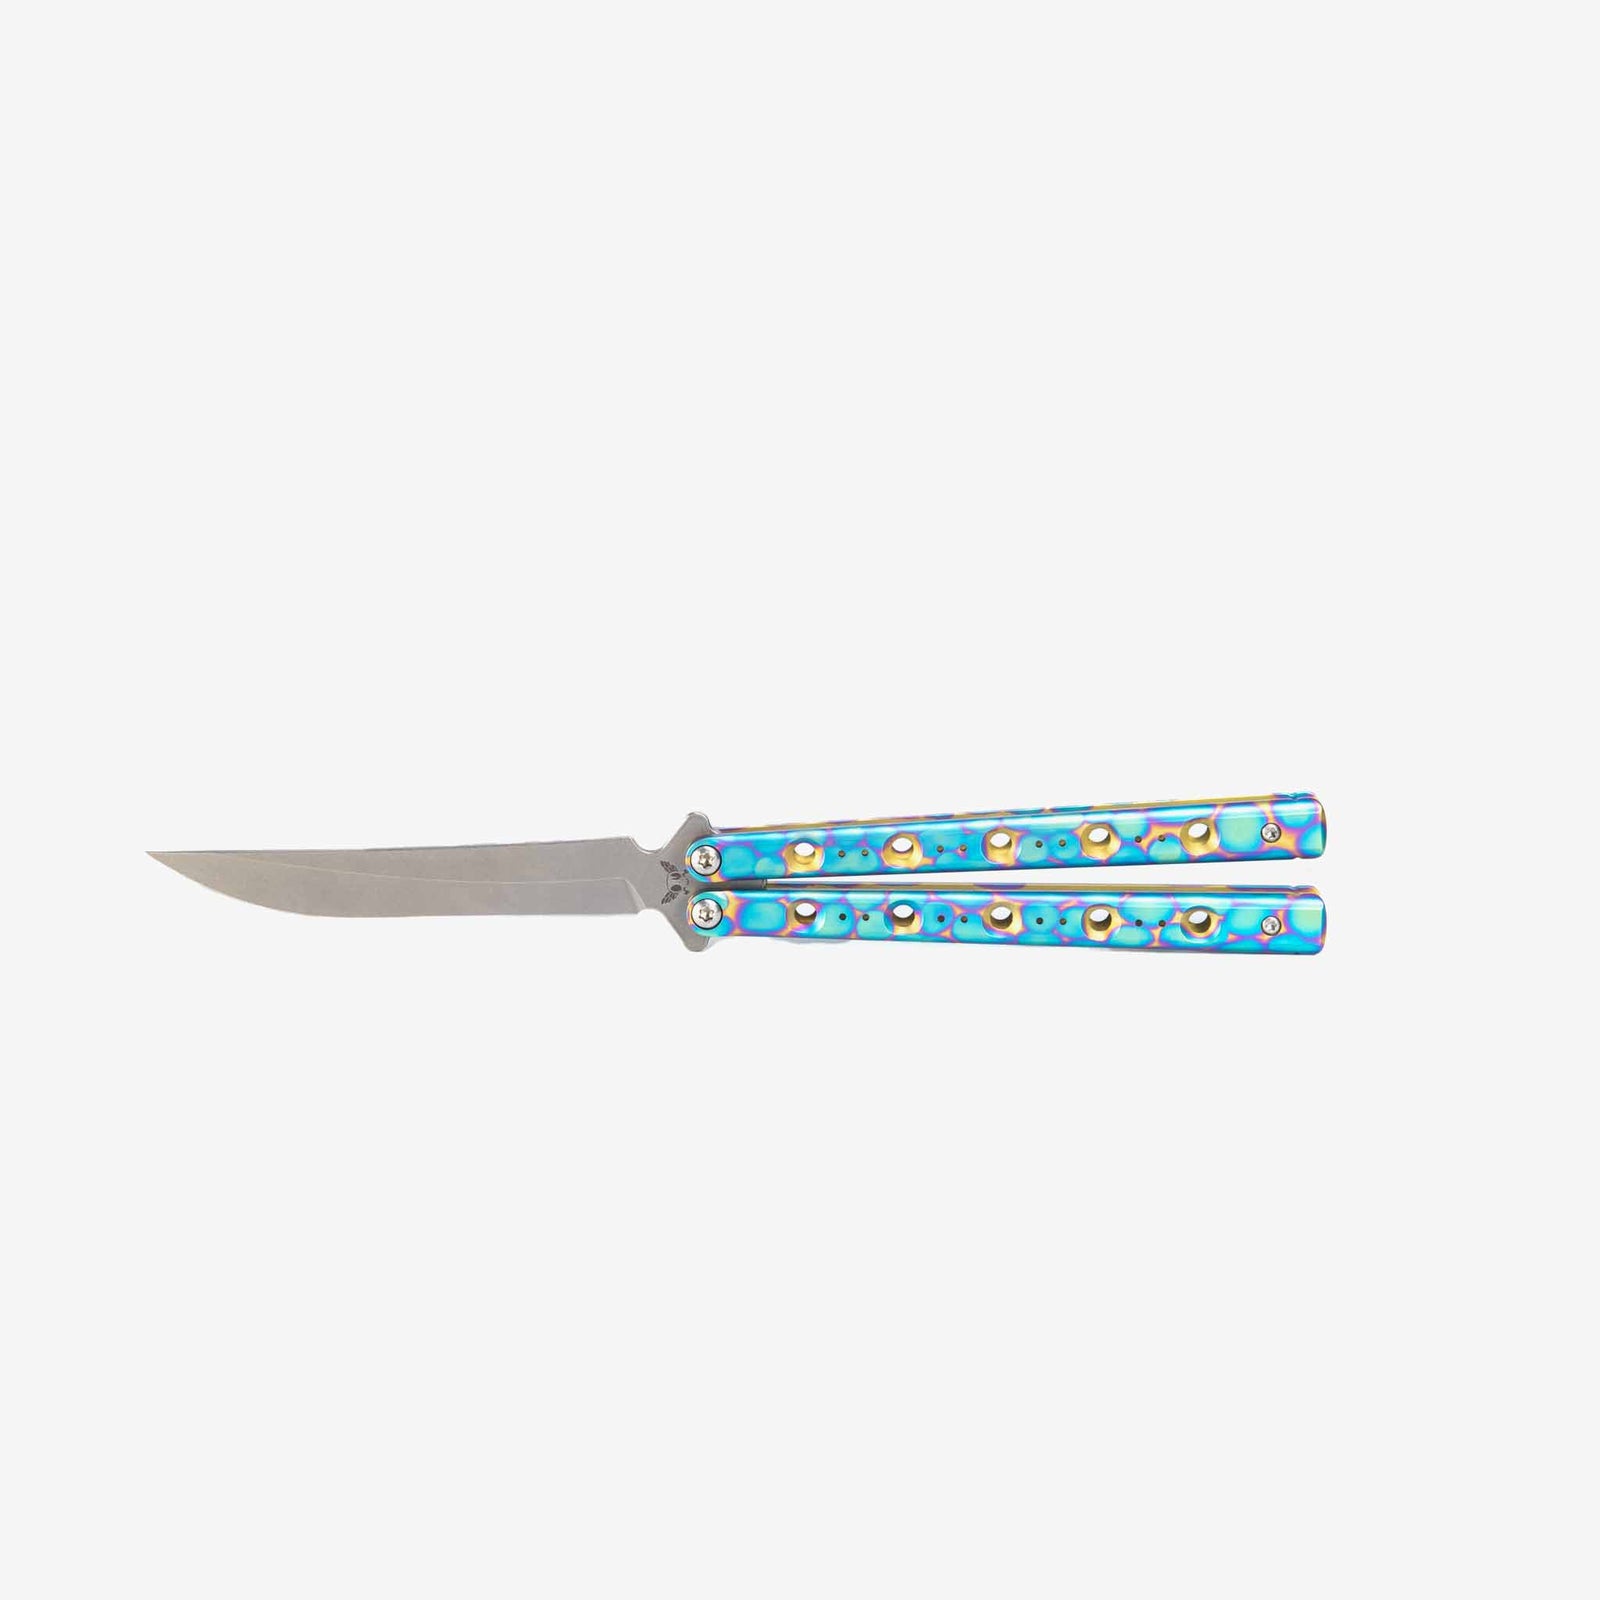 Butterfly Comb Knife - Mounteen  Butterfly knife, Knife, Stainless steel